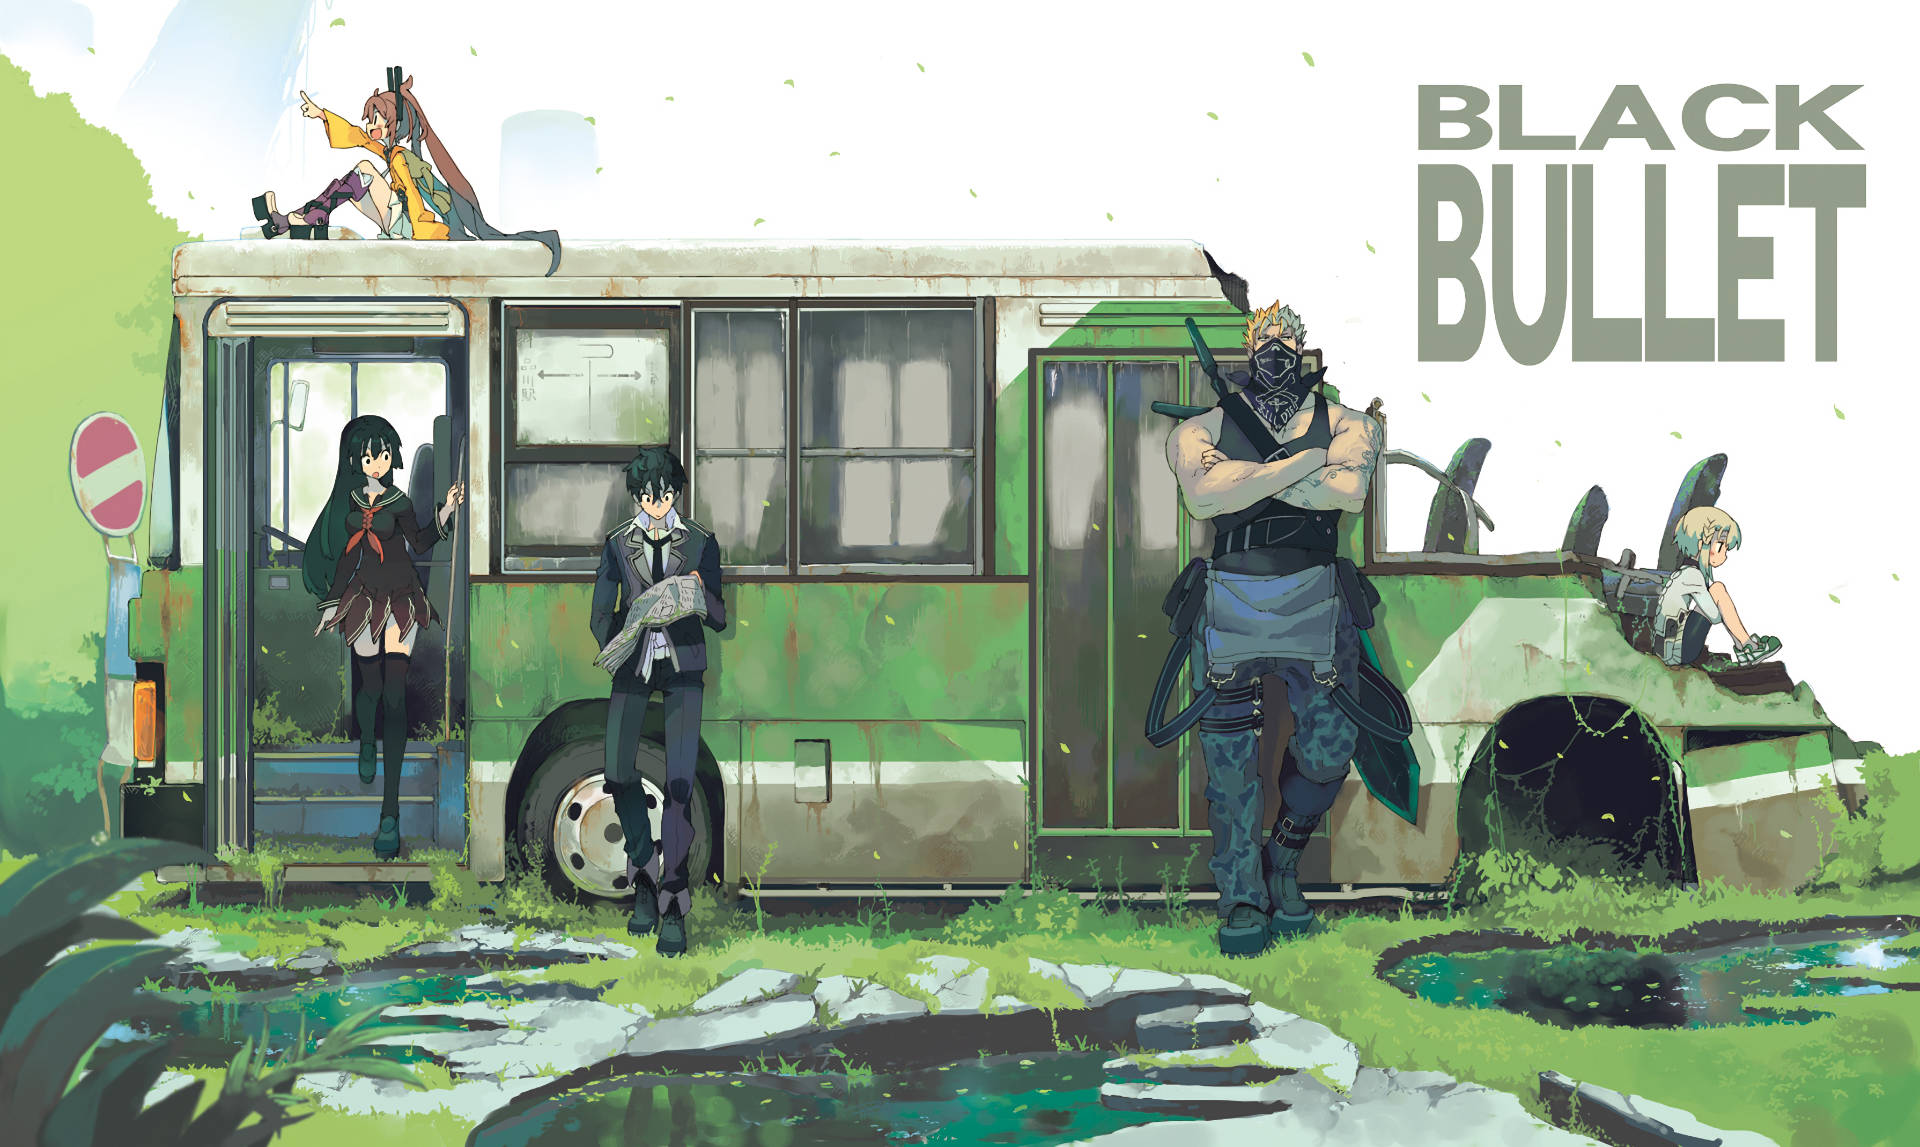 Black Bullet Manga Cover Background